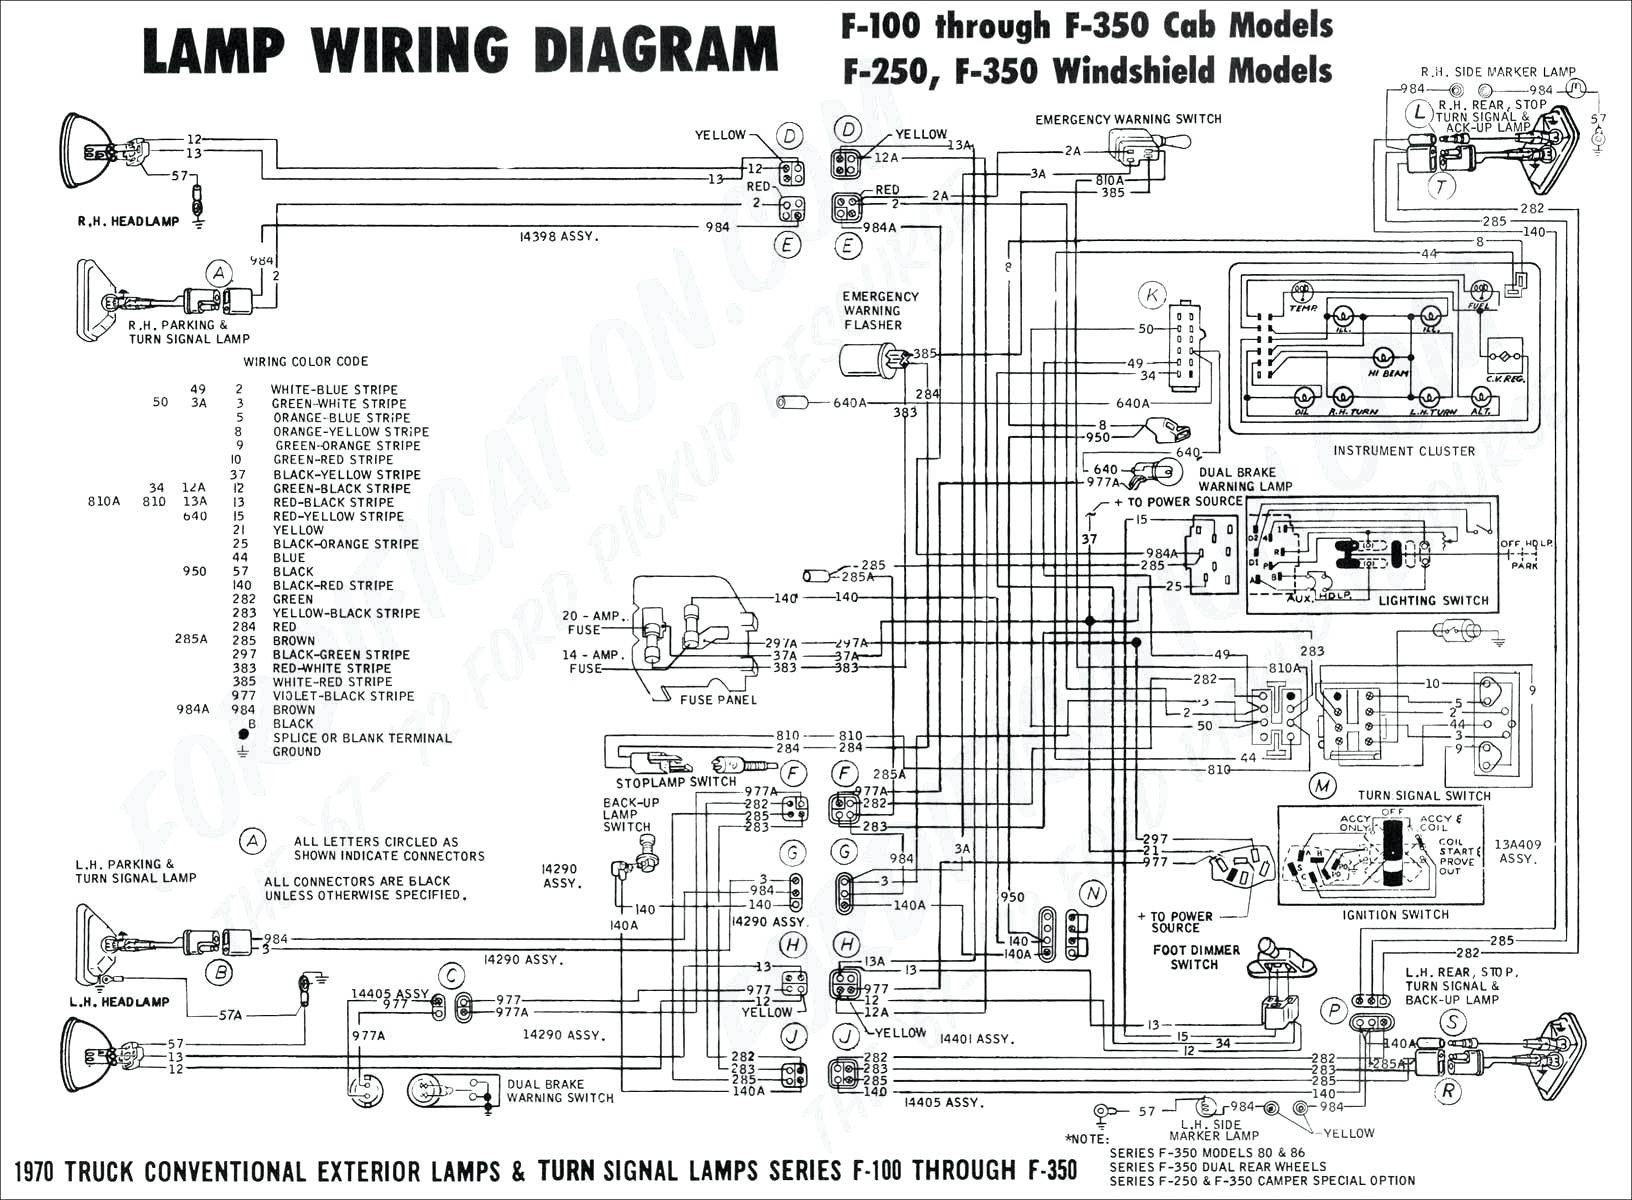 1994 ford truck wiring diagrams wiring rh westpol co 1966 Ford F100 Wiring Diagram 1975 Ford